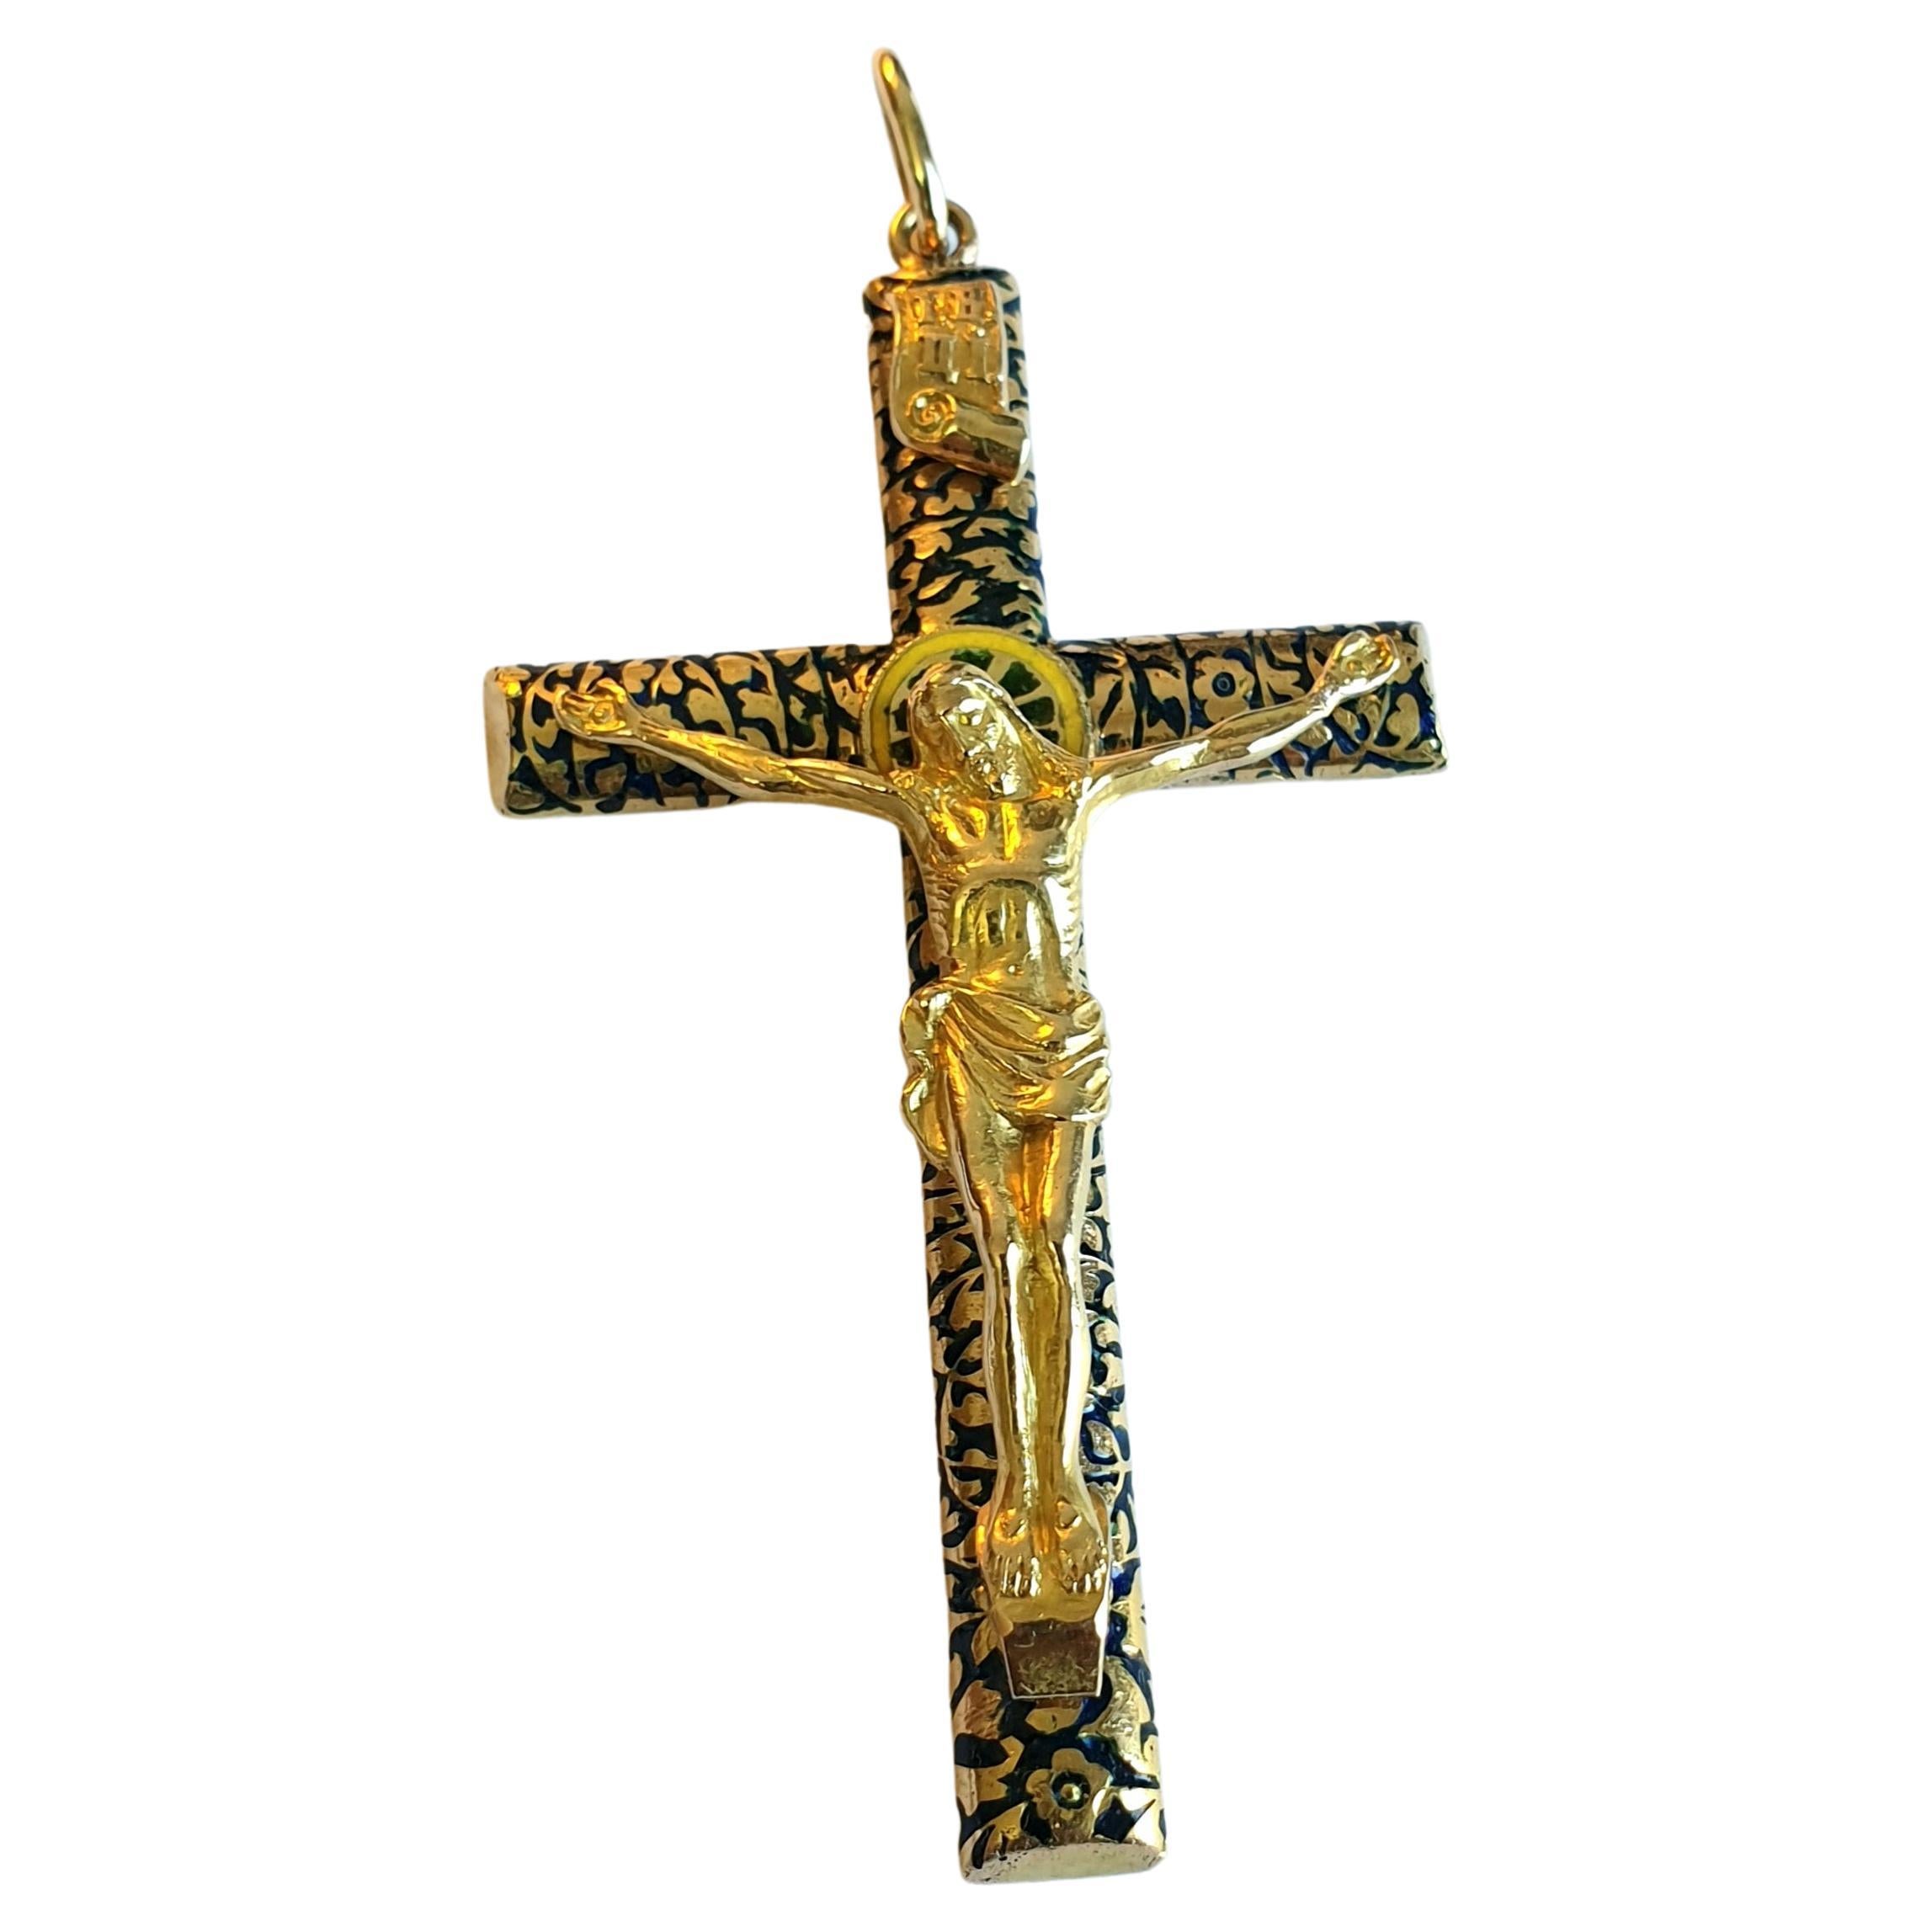 Pendentif en or russe 14k de grande taille, 7 cm de long, en or massif avec la statue de Jésus-Christ sur la croix, décoré d'émail noir. Le pendentif est marqué de l'étalon d'or impérial russe 56 et de la marque d'essai de Moscou et date de l'ère